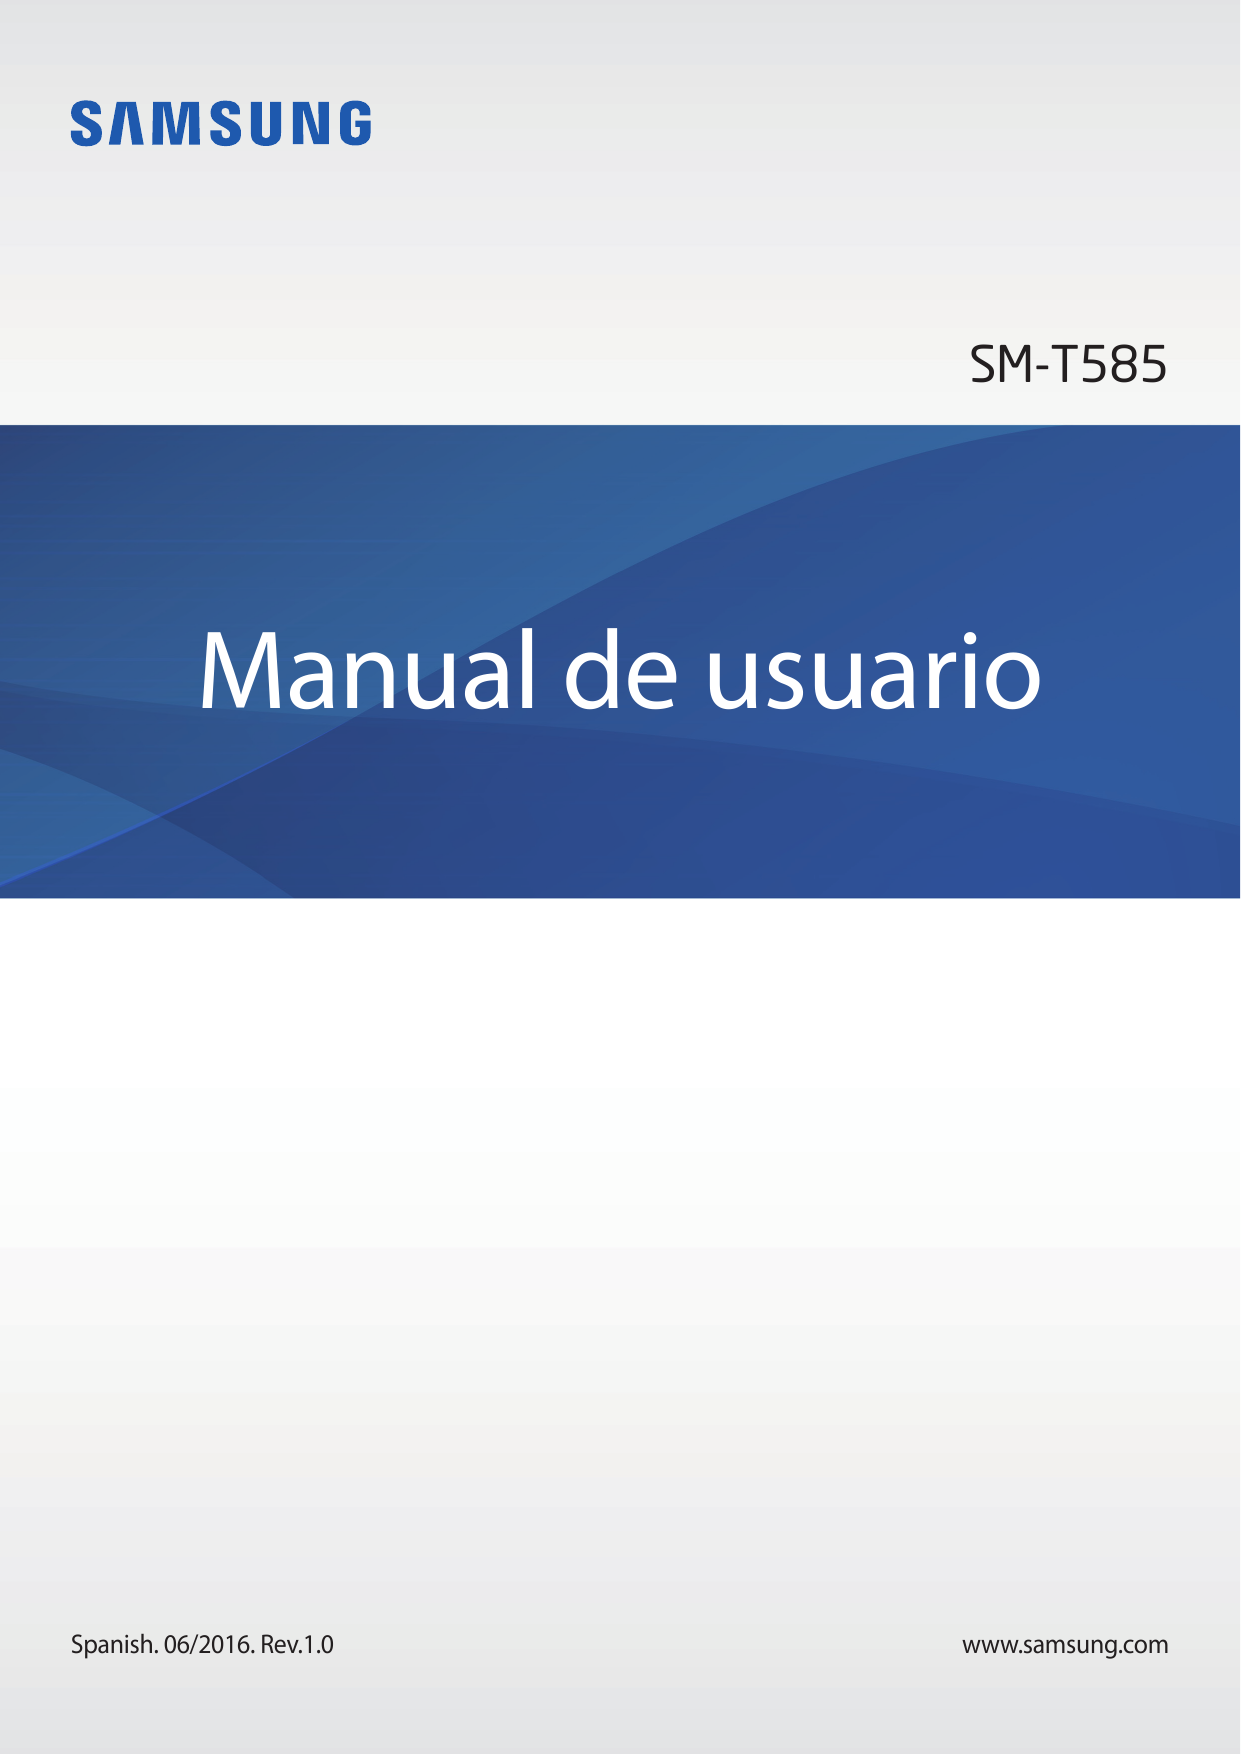 SM-T585Manual de usuarioSpanish. 06/2016. Rev.1.0www.samsung.com